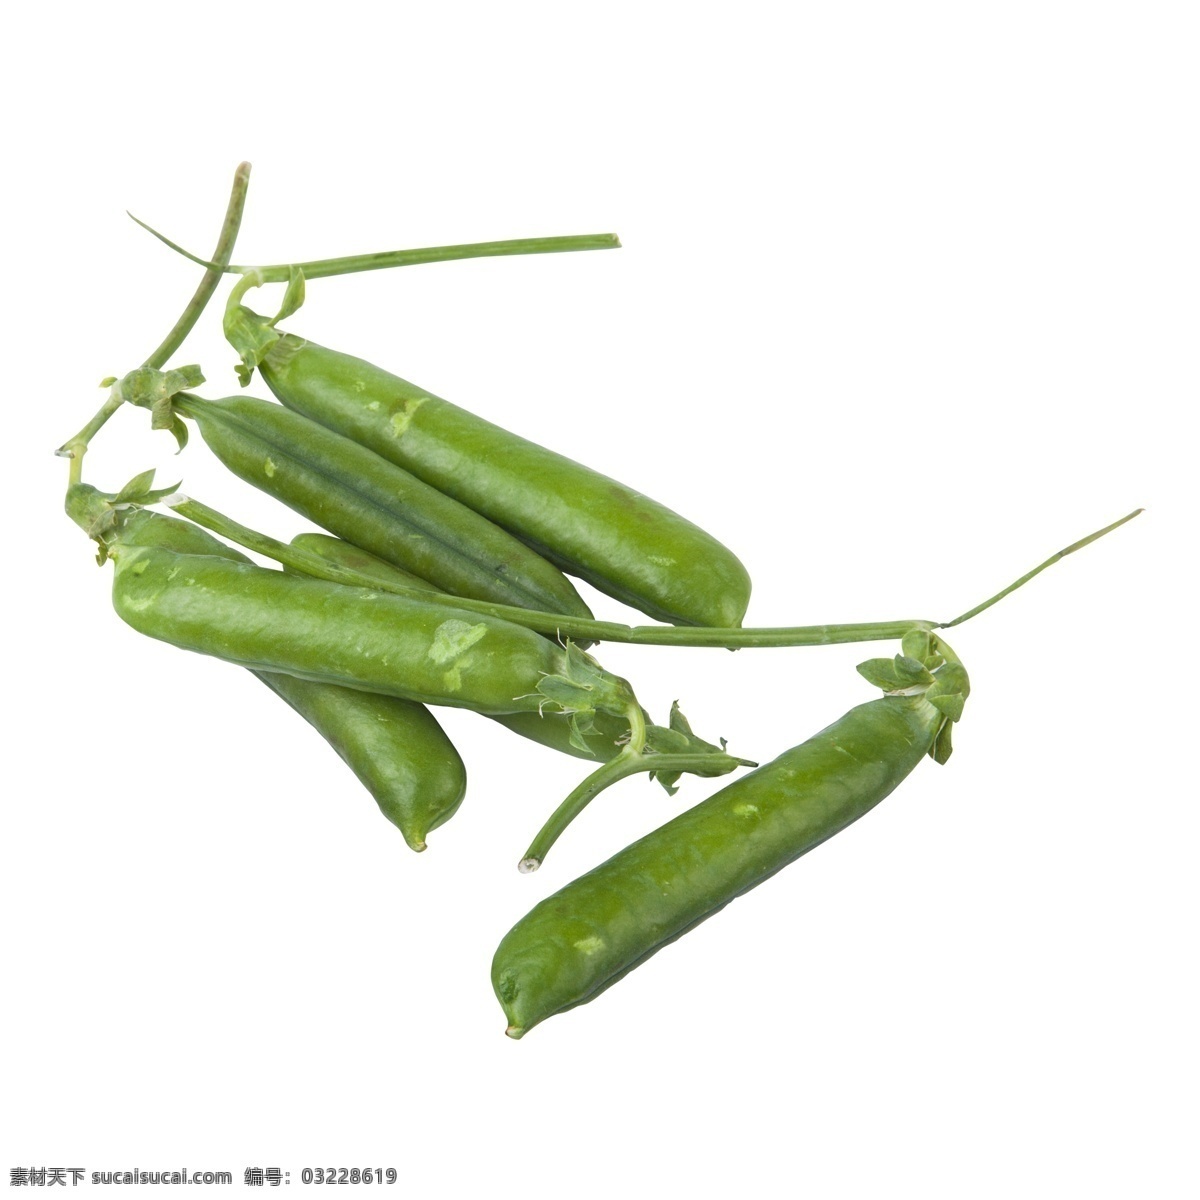 绿色植物 果实 元素 绿色 植物 豆子 美食 食物 蔬菜 吃的 青豆 味道 光泽 叶子 纹理 生长 质感